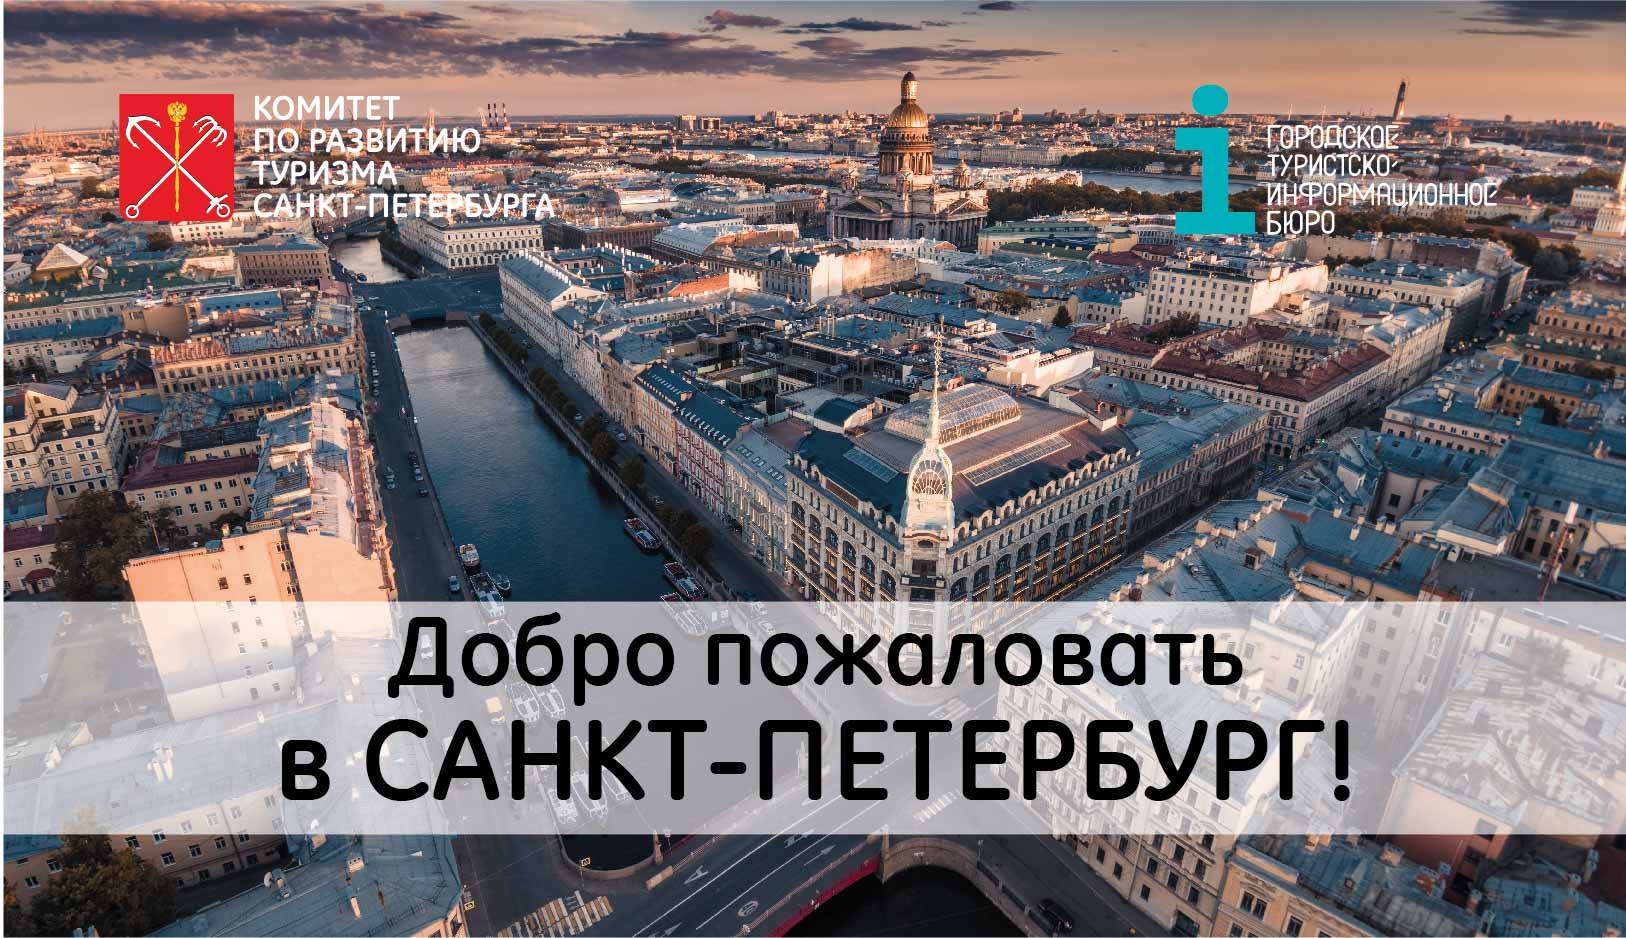 Приглашаем в роуд-шоу «Добро пожаловать в Санкт-Петербург!» по городам Казахстана и Азербайджана